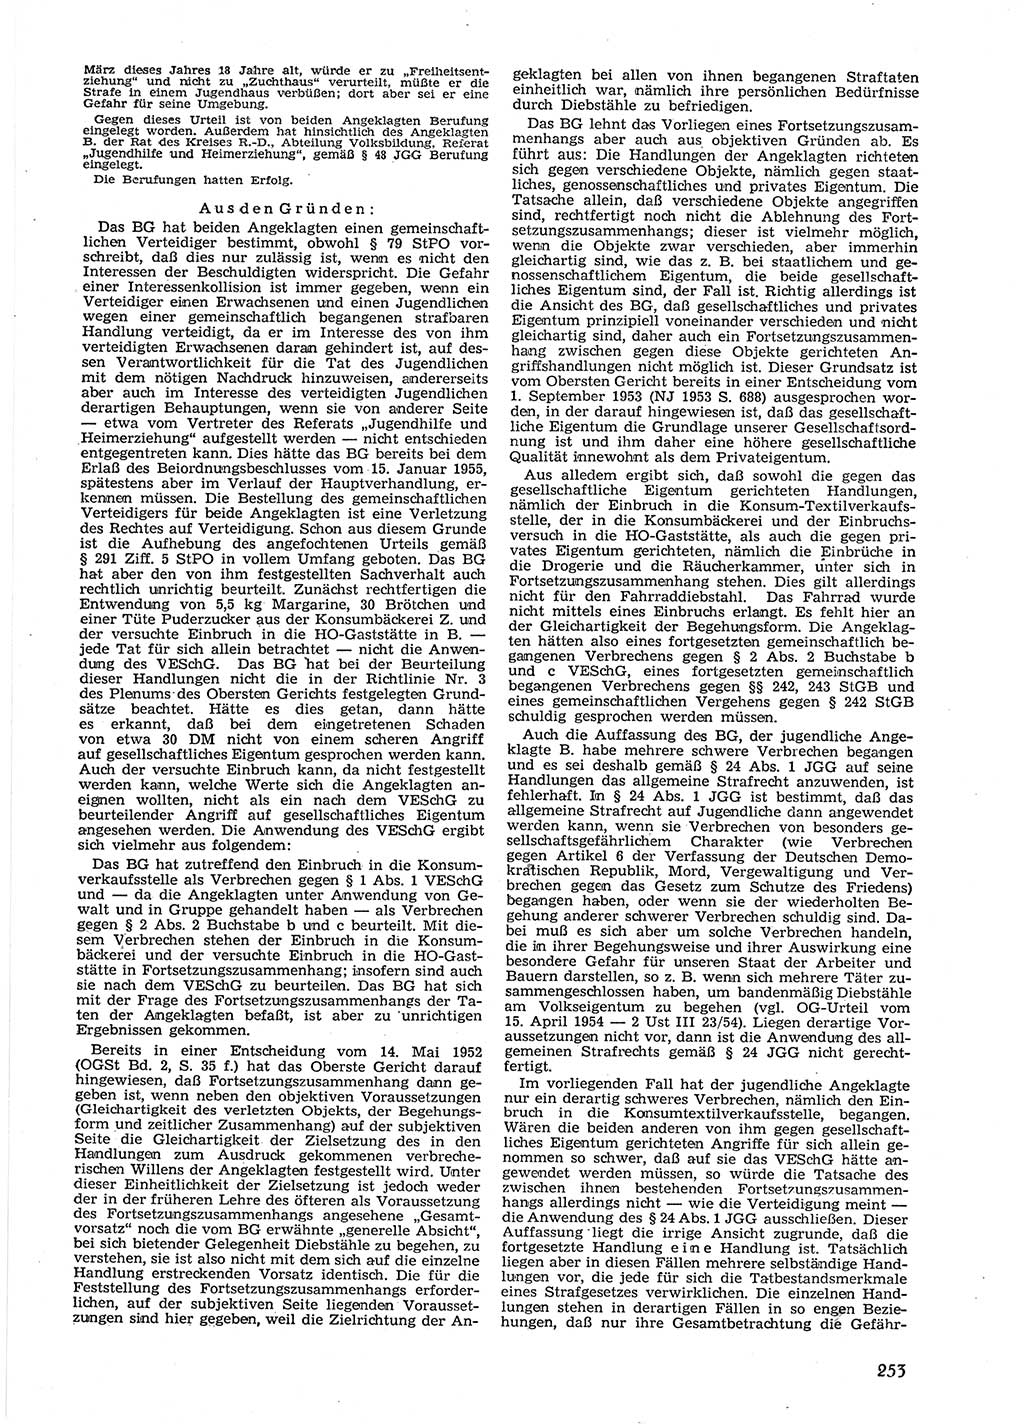 Neue Justiz (NJ), Zeitschrift für Recht und Rechtswissenschaft [Deutsche Demokratische Republik (DDR)], 9. Jahrgang 1955, Seite 253 (NJ DDR 1955, S. 253)